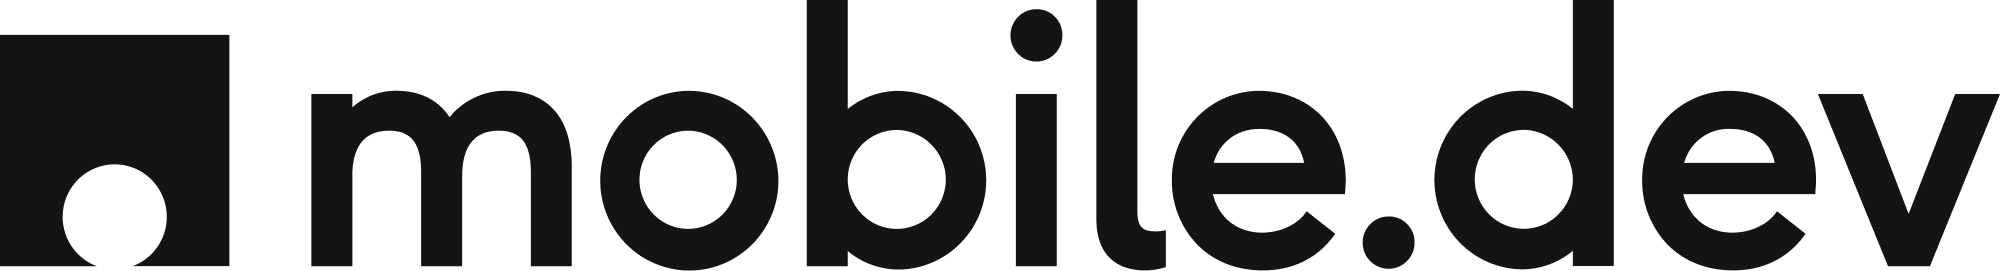 mobile.dev logo